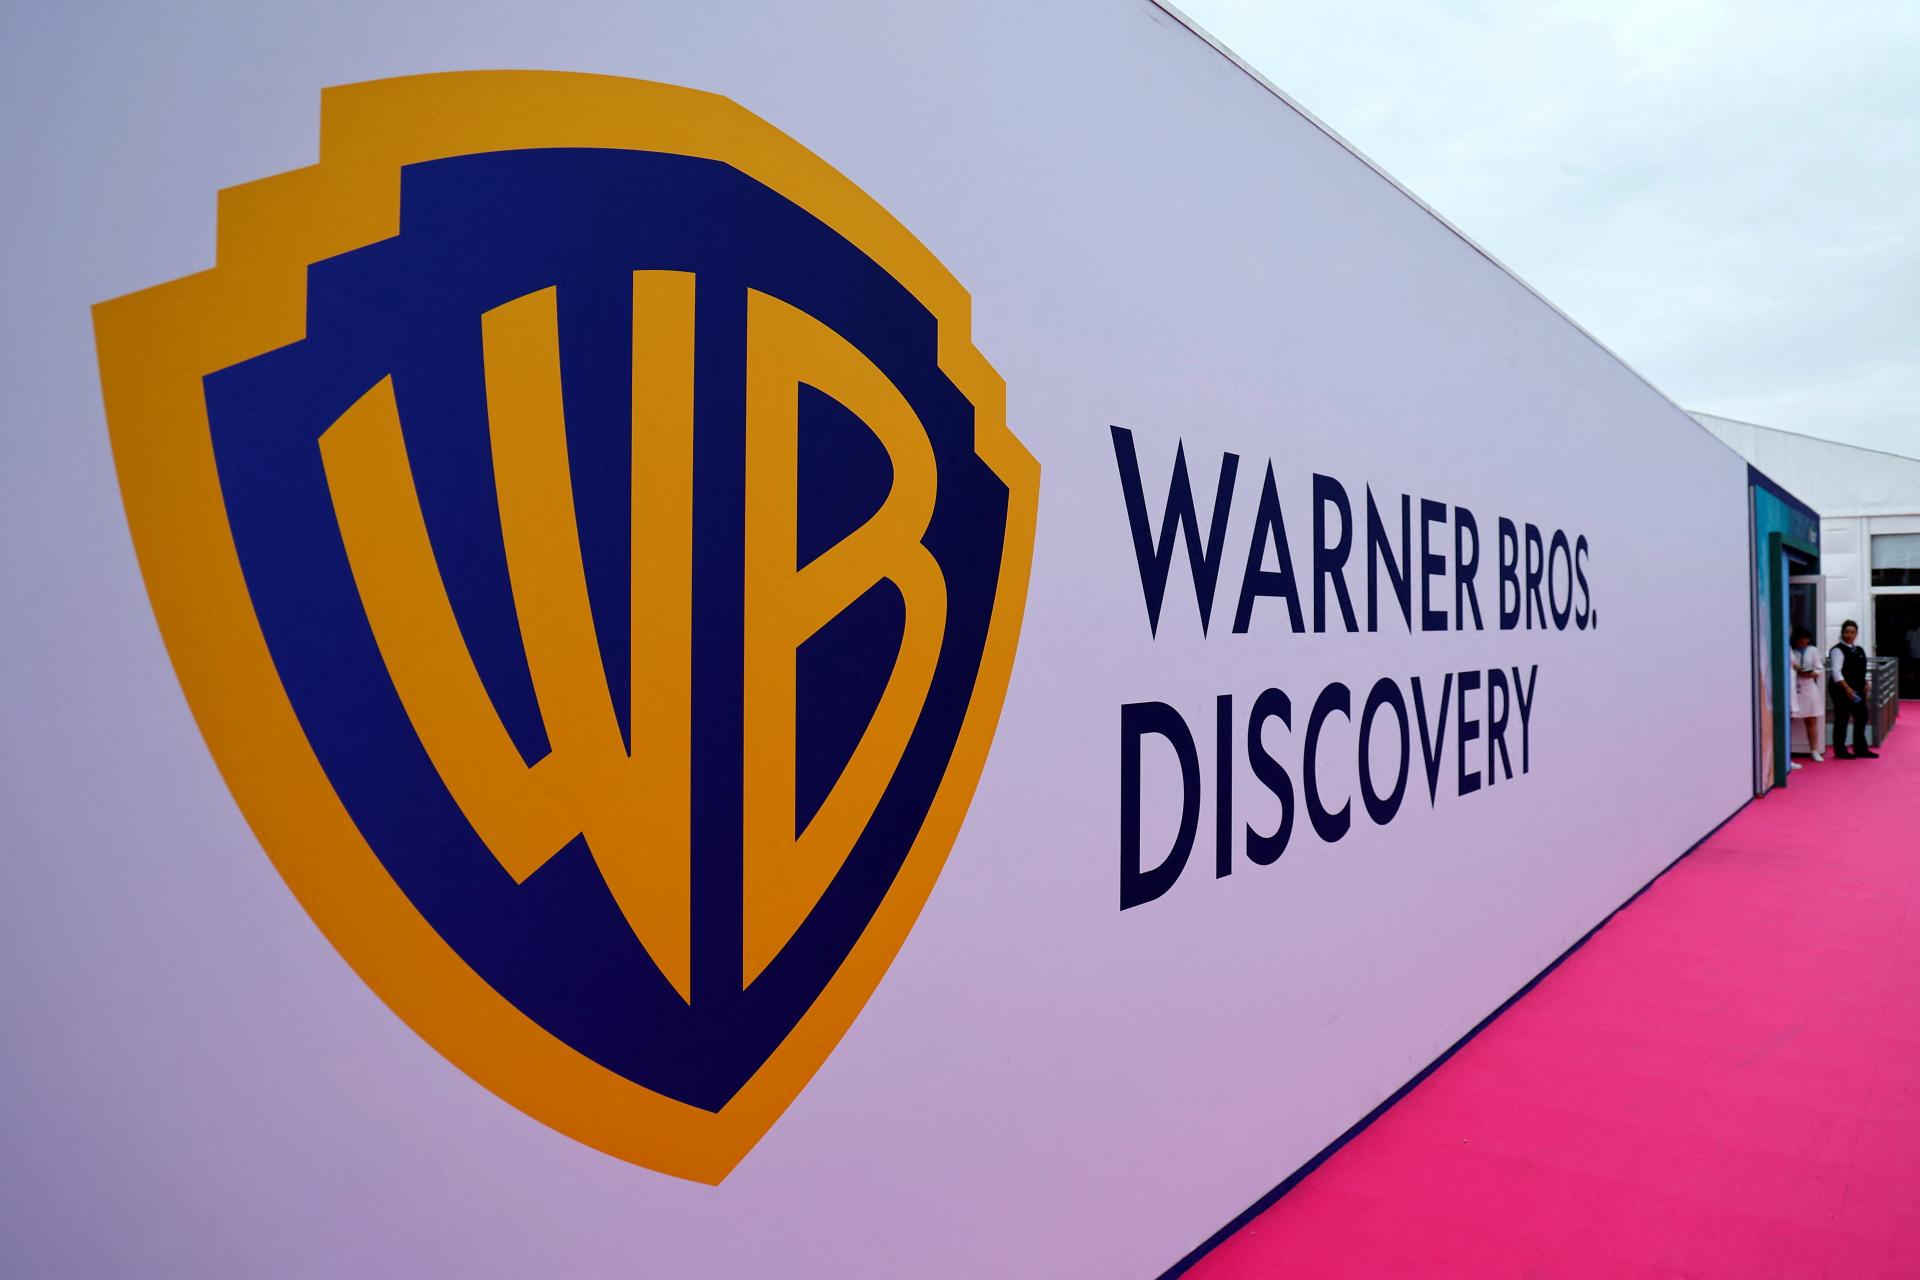 Strata Warner Bros. Discovery bola vyššia, než sa čakalo. Akcie výrazne oslabili